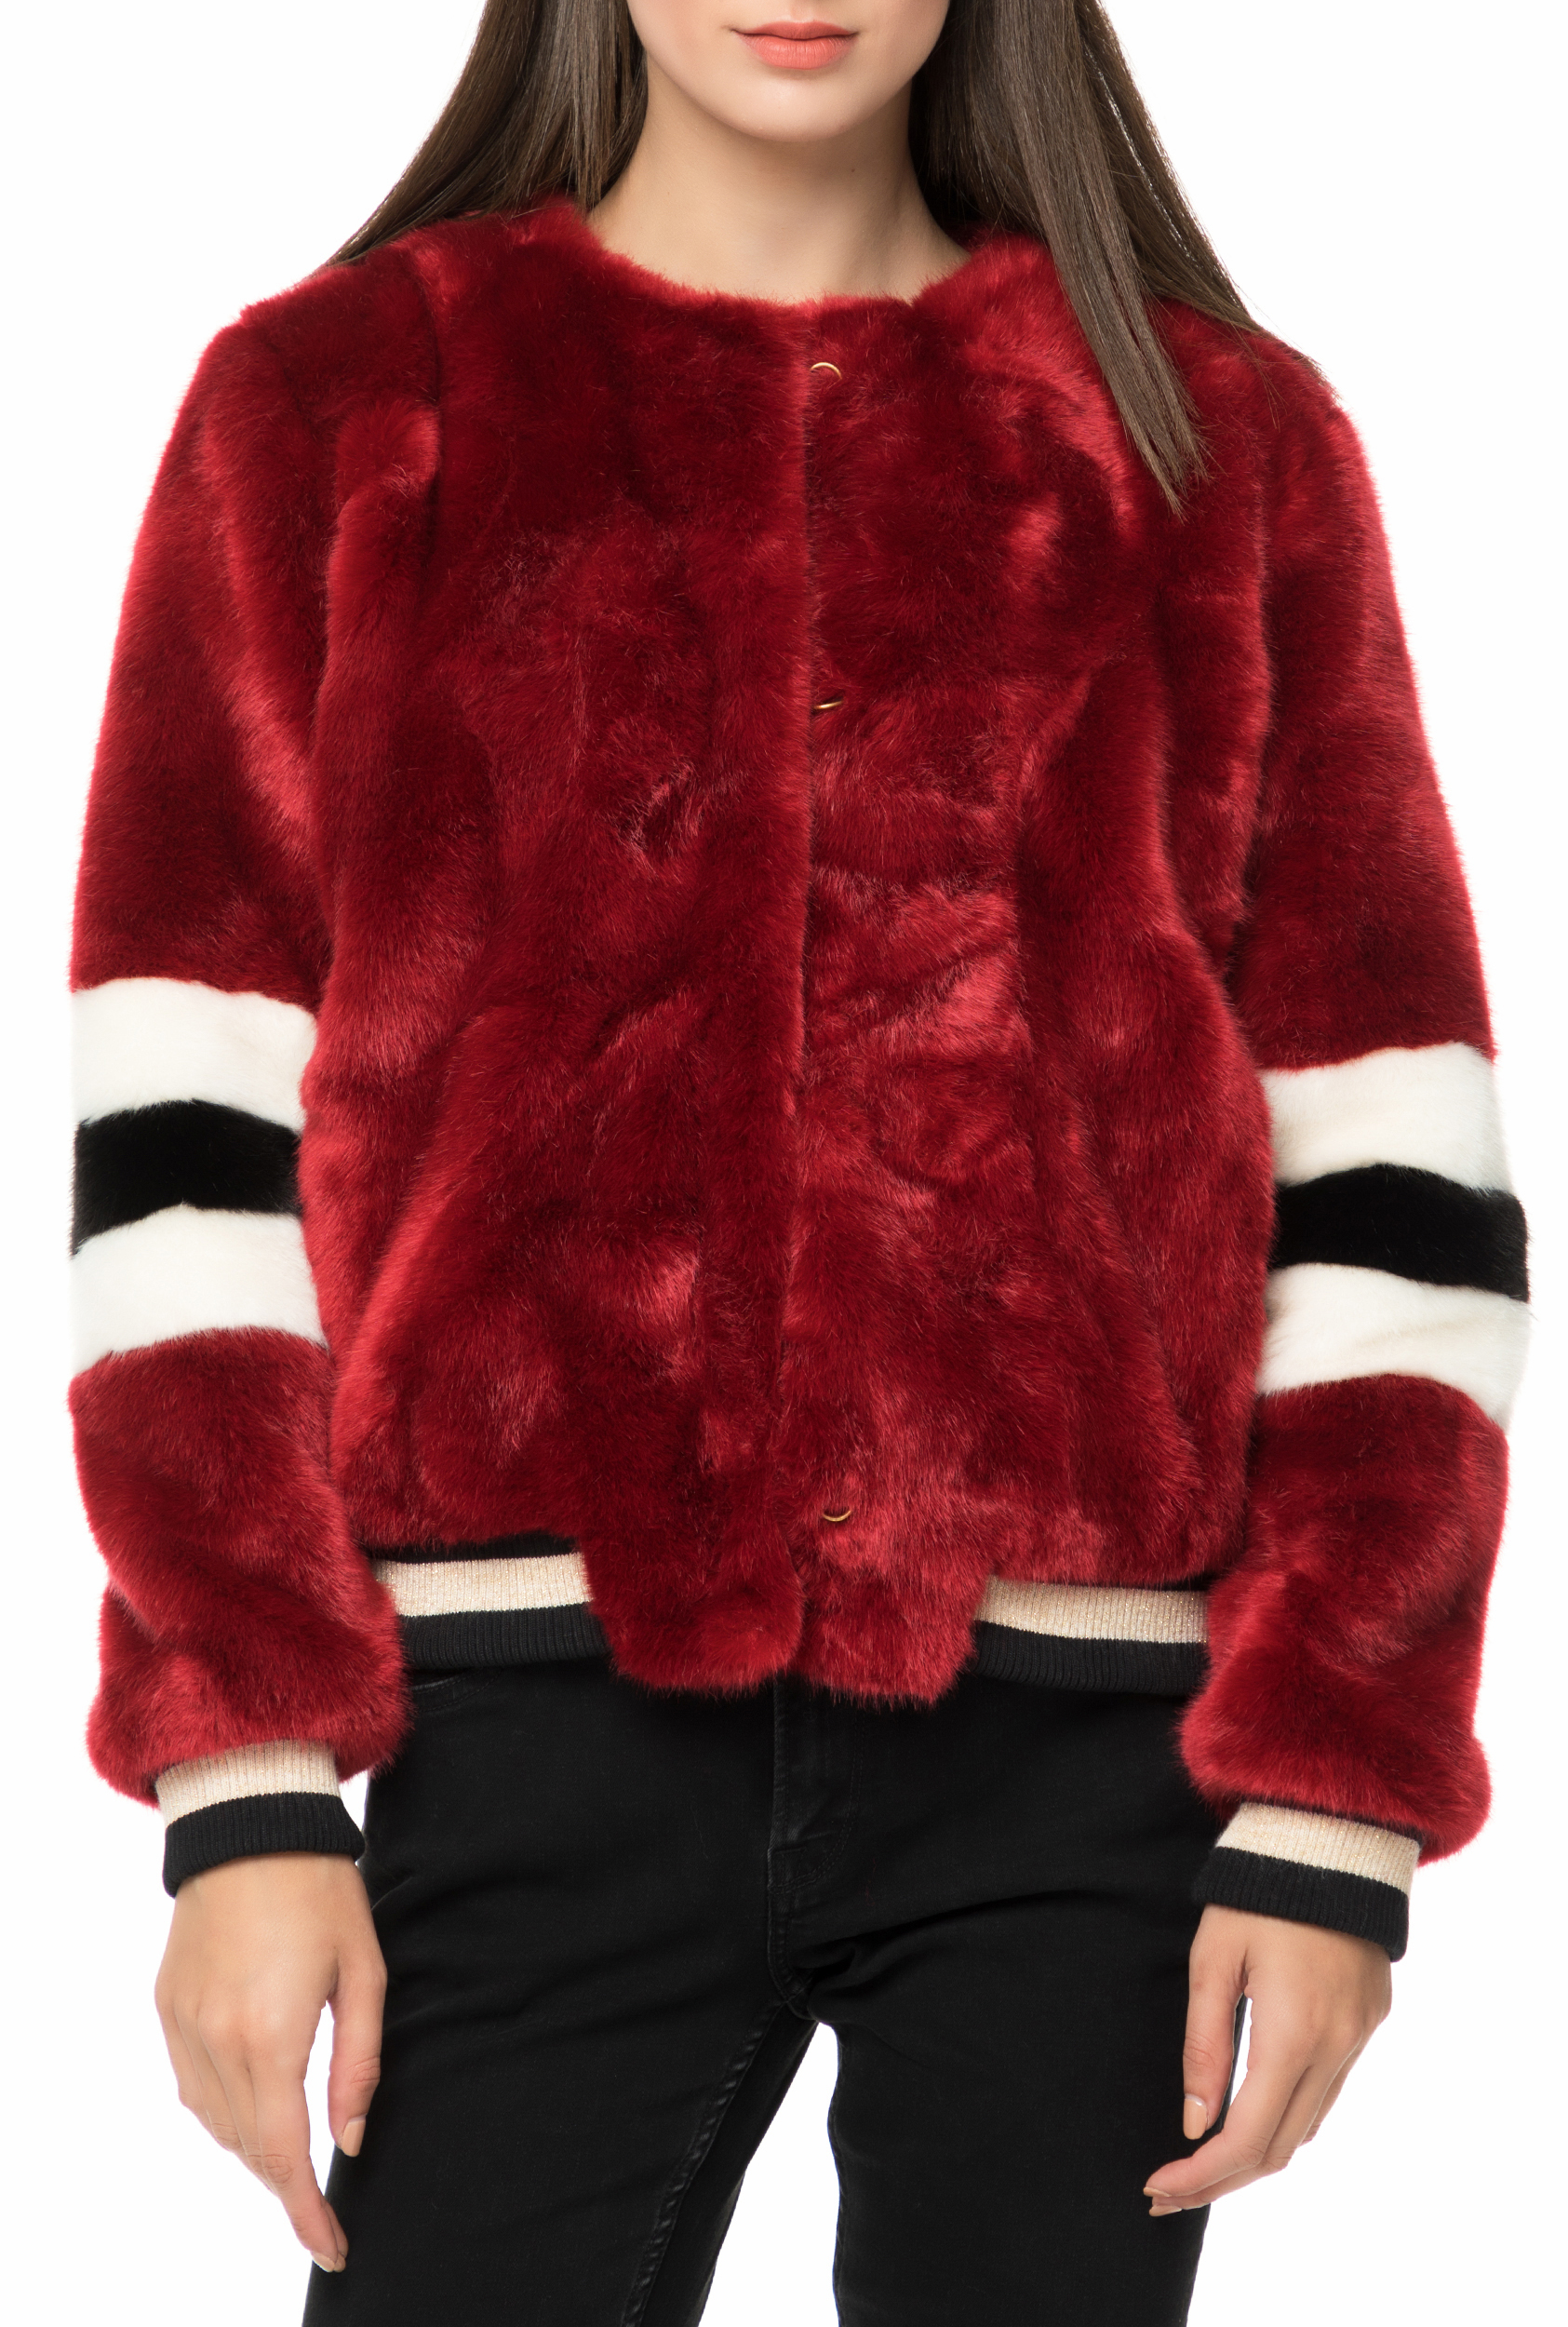 Γυναικεία/Ρούχα/Πανωφόρια/Τζάκετς GAS - Γυναικείο γούνινο jacket GAS GIUBBINI DELIZIA κόκκινο